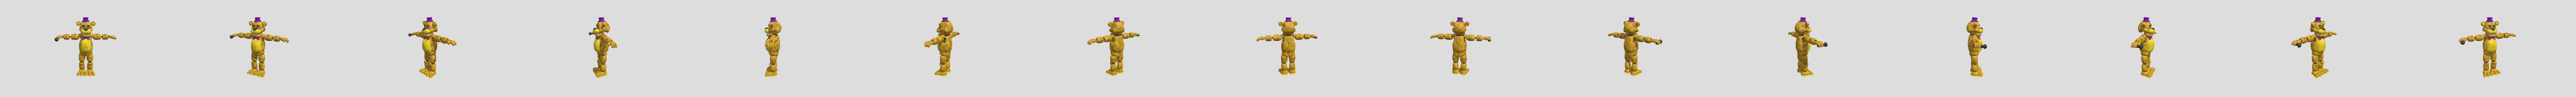 Fredbear fnaf - Download Free 3D model by Lefty (@keslomihail) [1d08199]